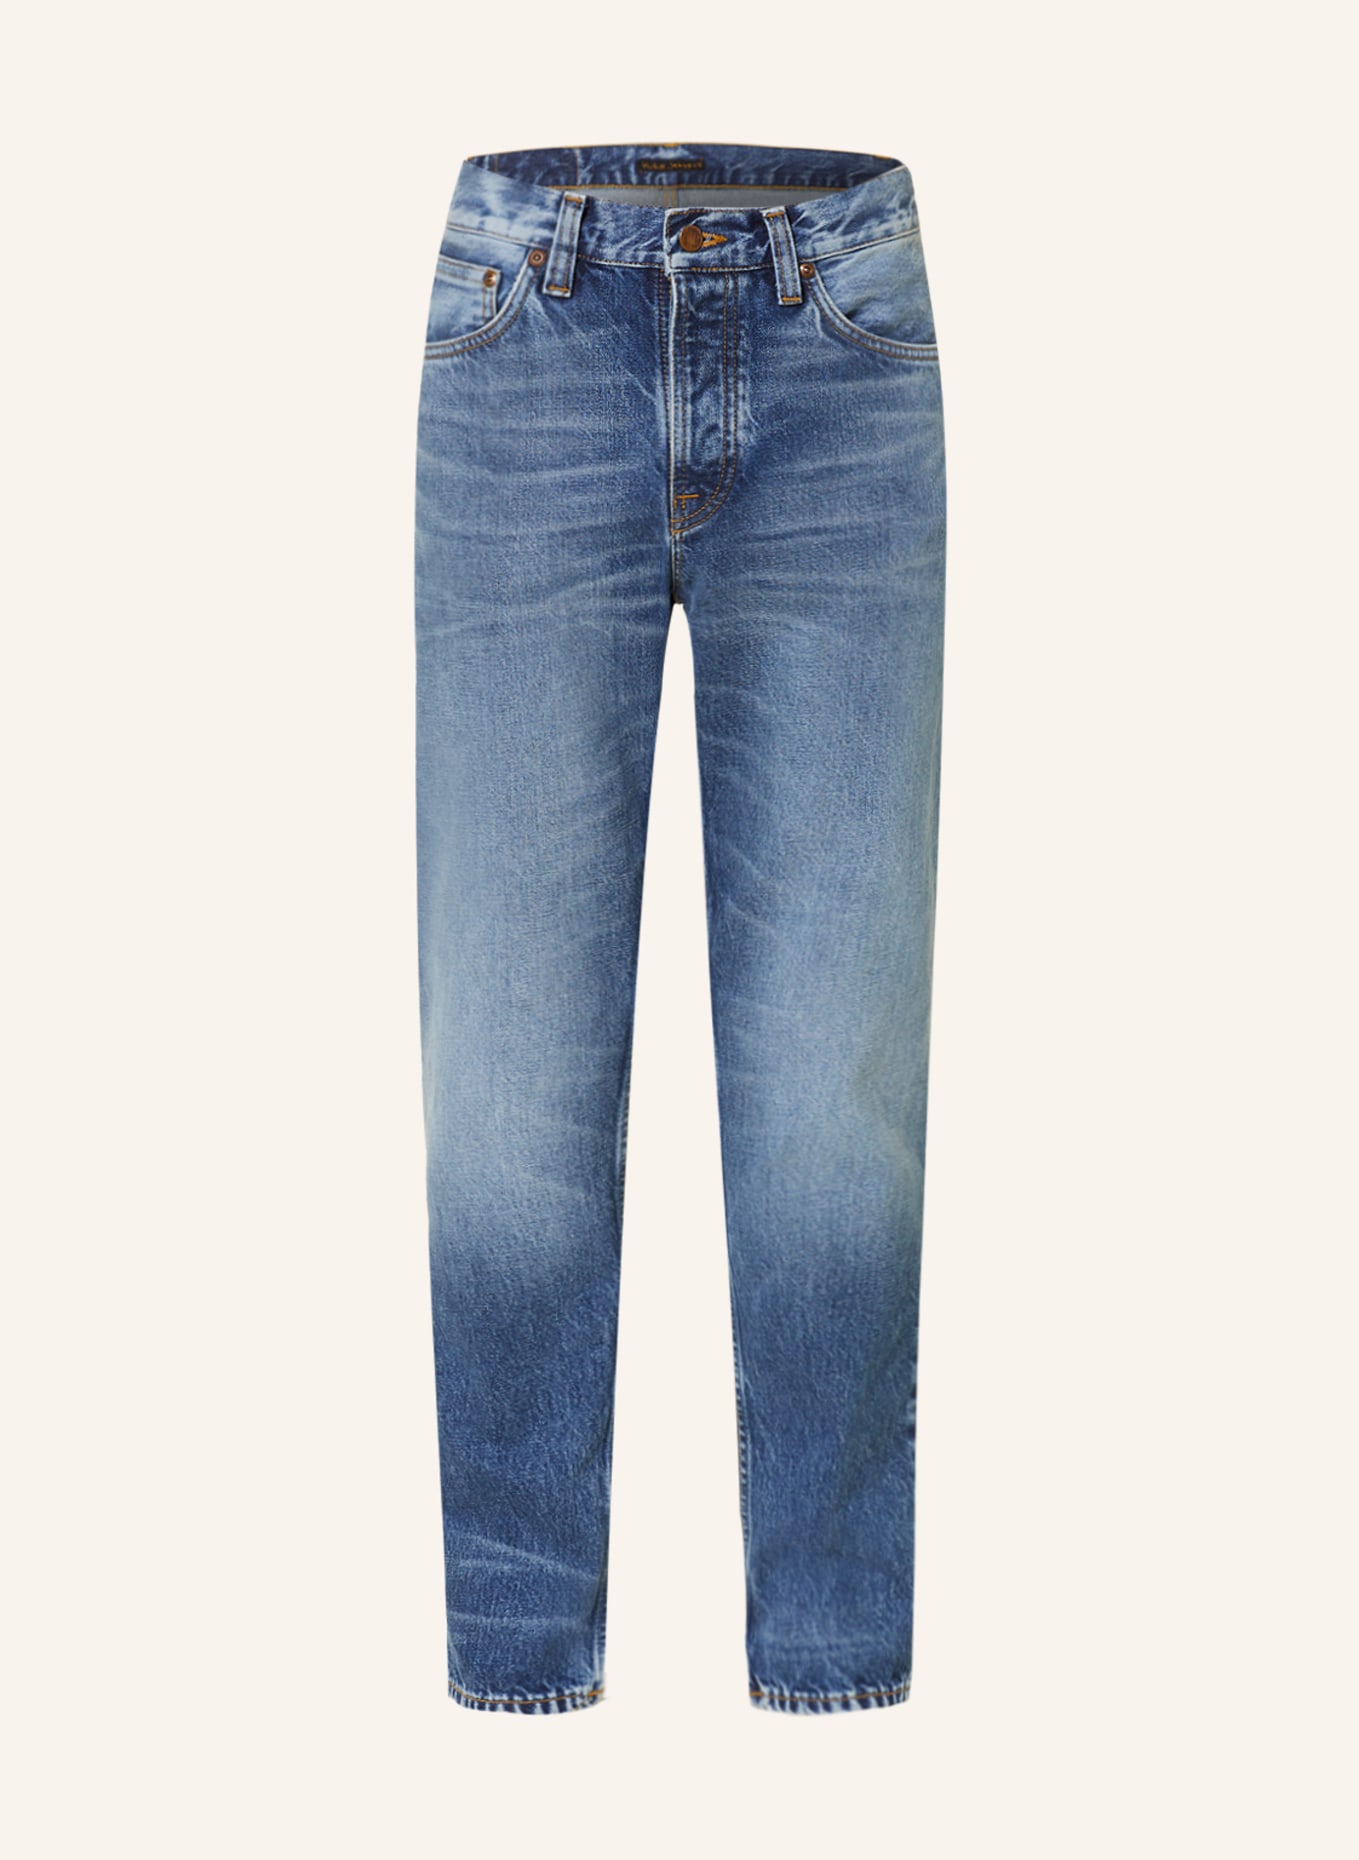 Nudie Jeans Jeans STEADY EDDIE II Tapered Fit, Farbe: Blue Tornado (Bild 1)